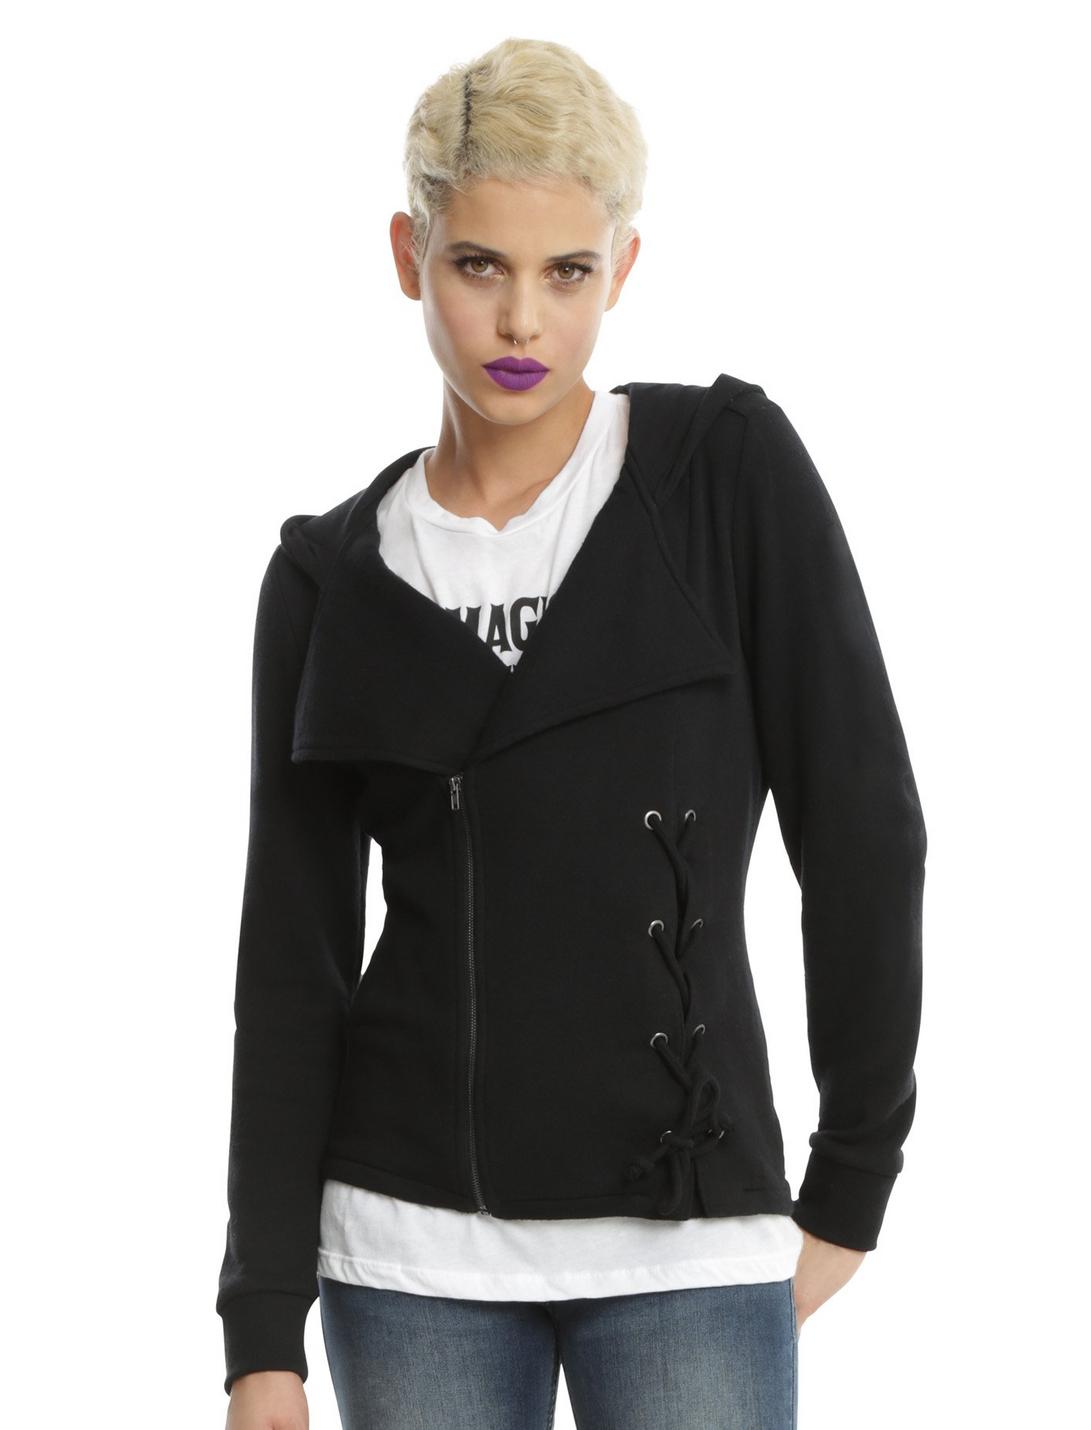 Black Fleece Lace-Up Girls Jacket, BLACK, hi-res